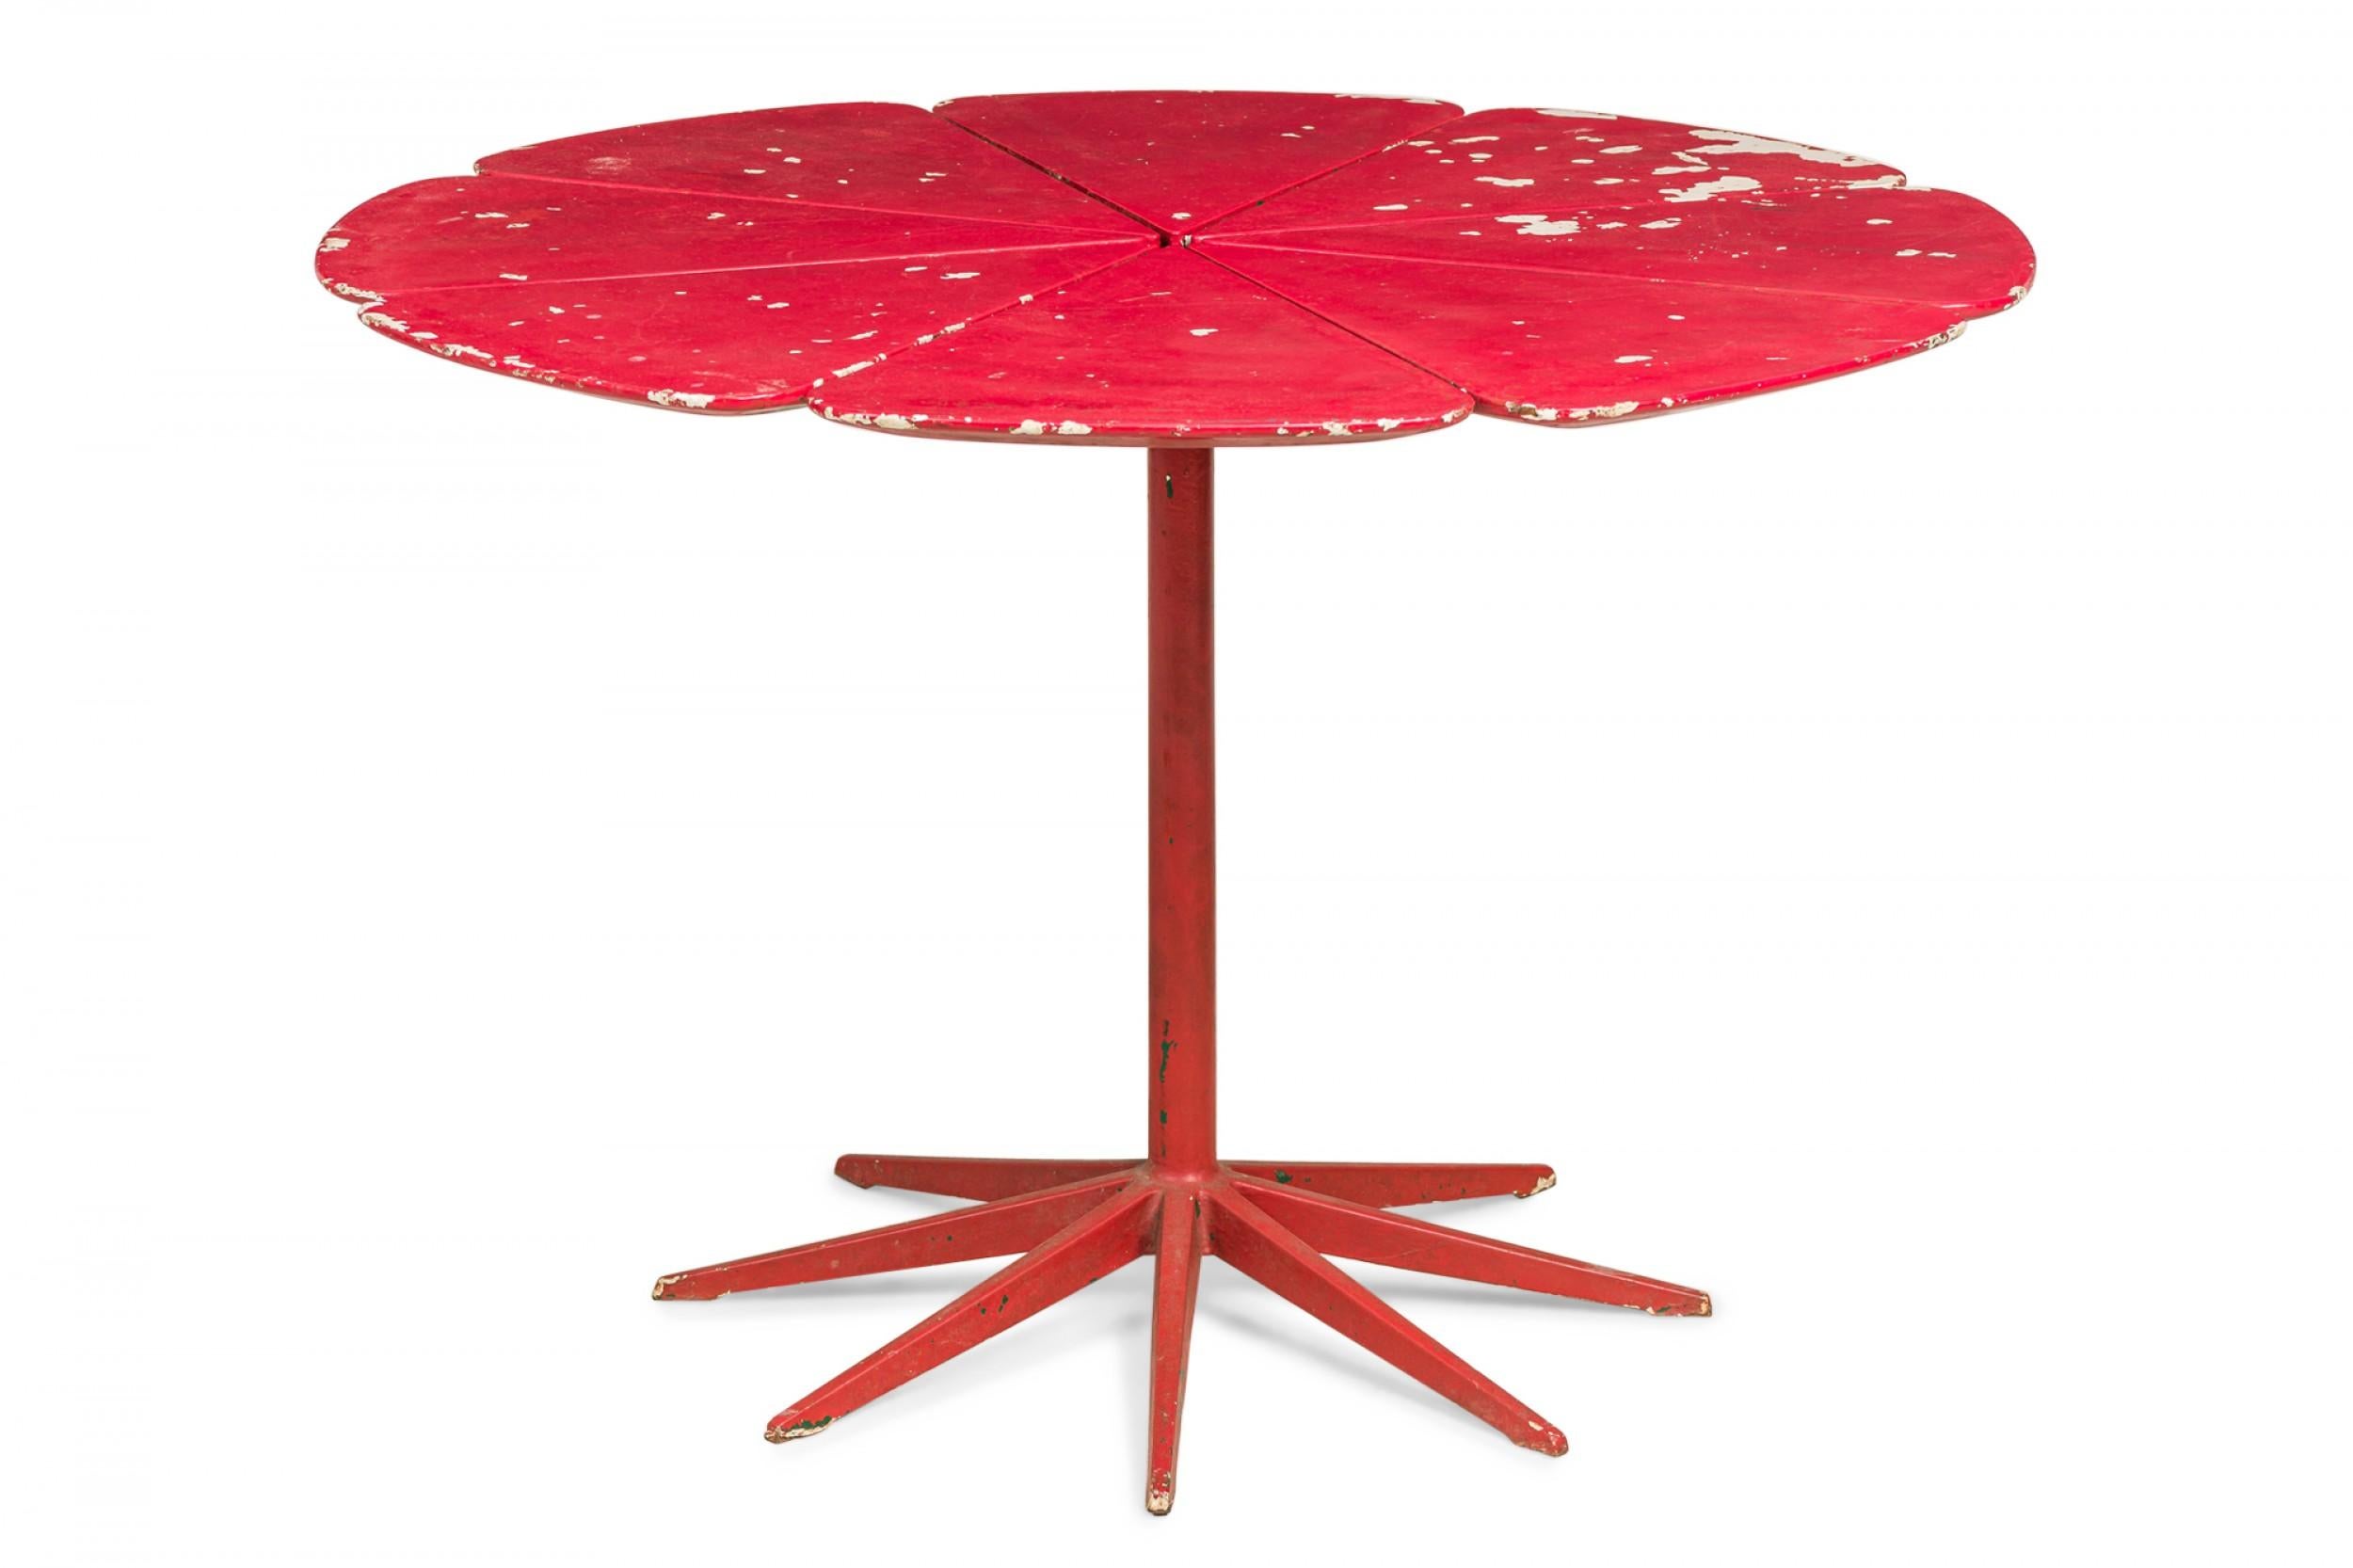 Amerikanischer Mid-Century-Mitteltisch in Blütenform aus Rotholz, rot lackiert und auf einem Sockel stehend. (RICHARD SCHULTZ FÜR KNOLL INTERNATIONAL).
 